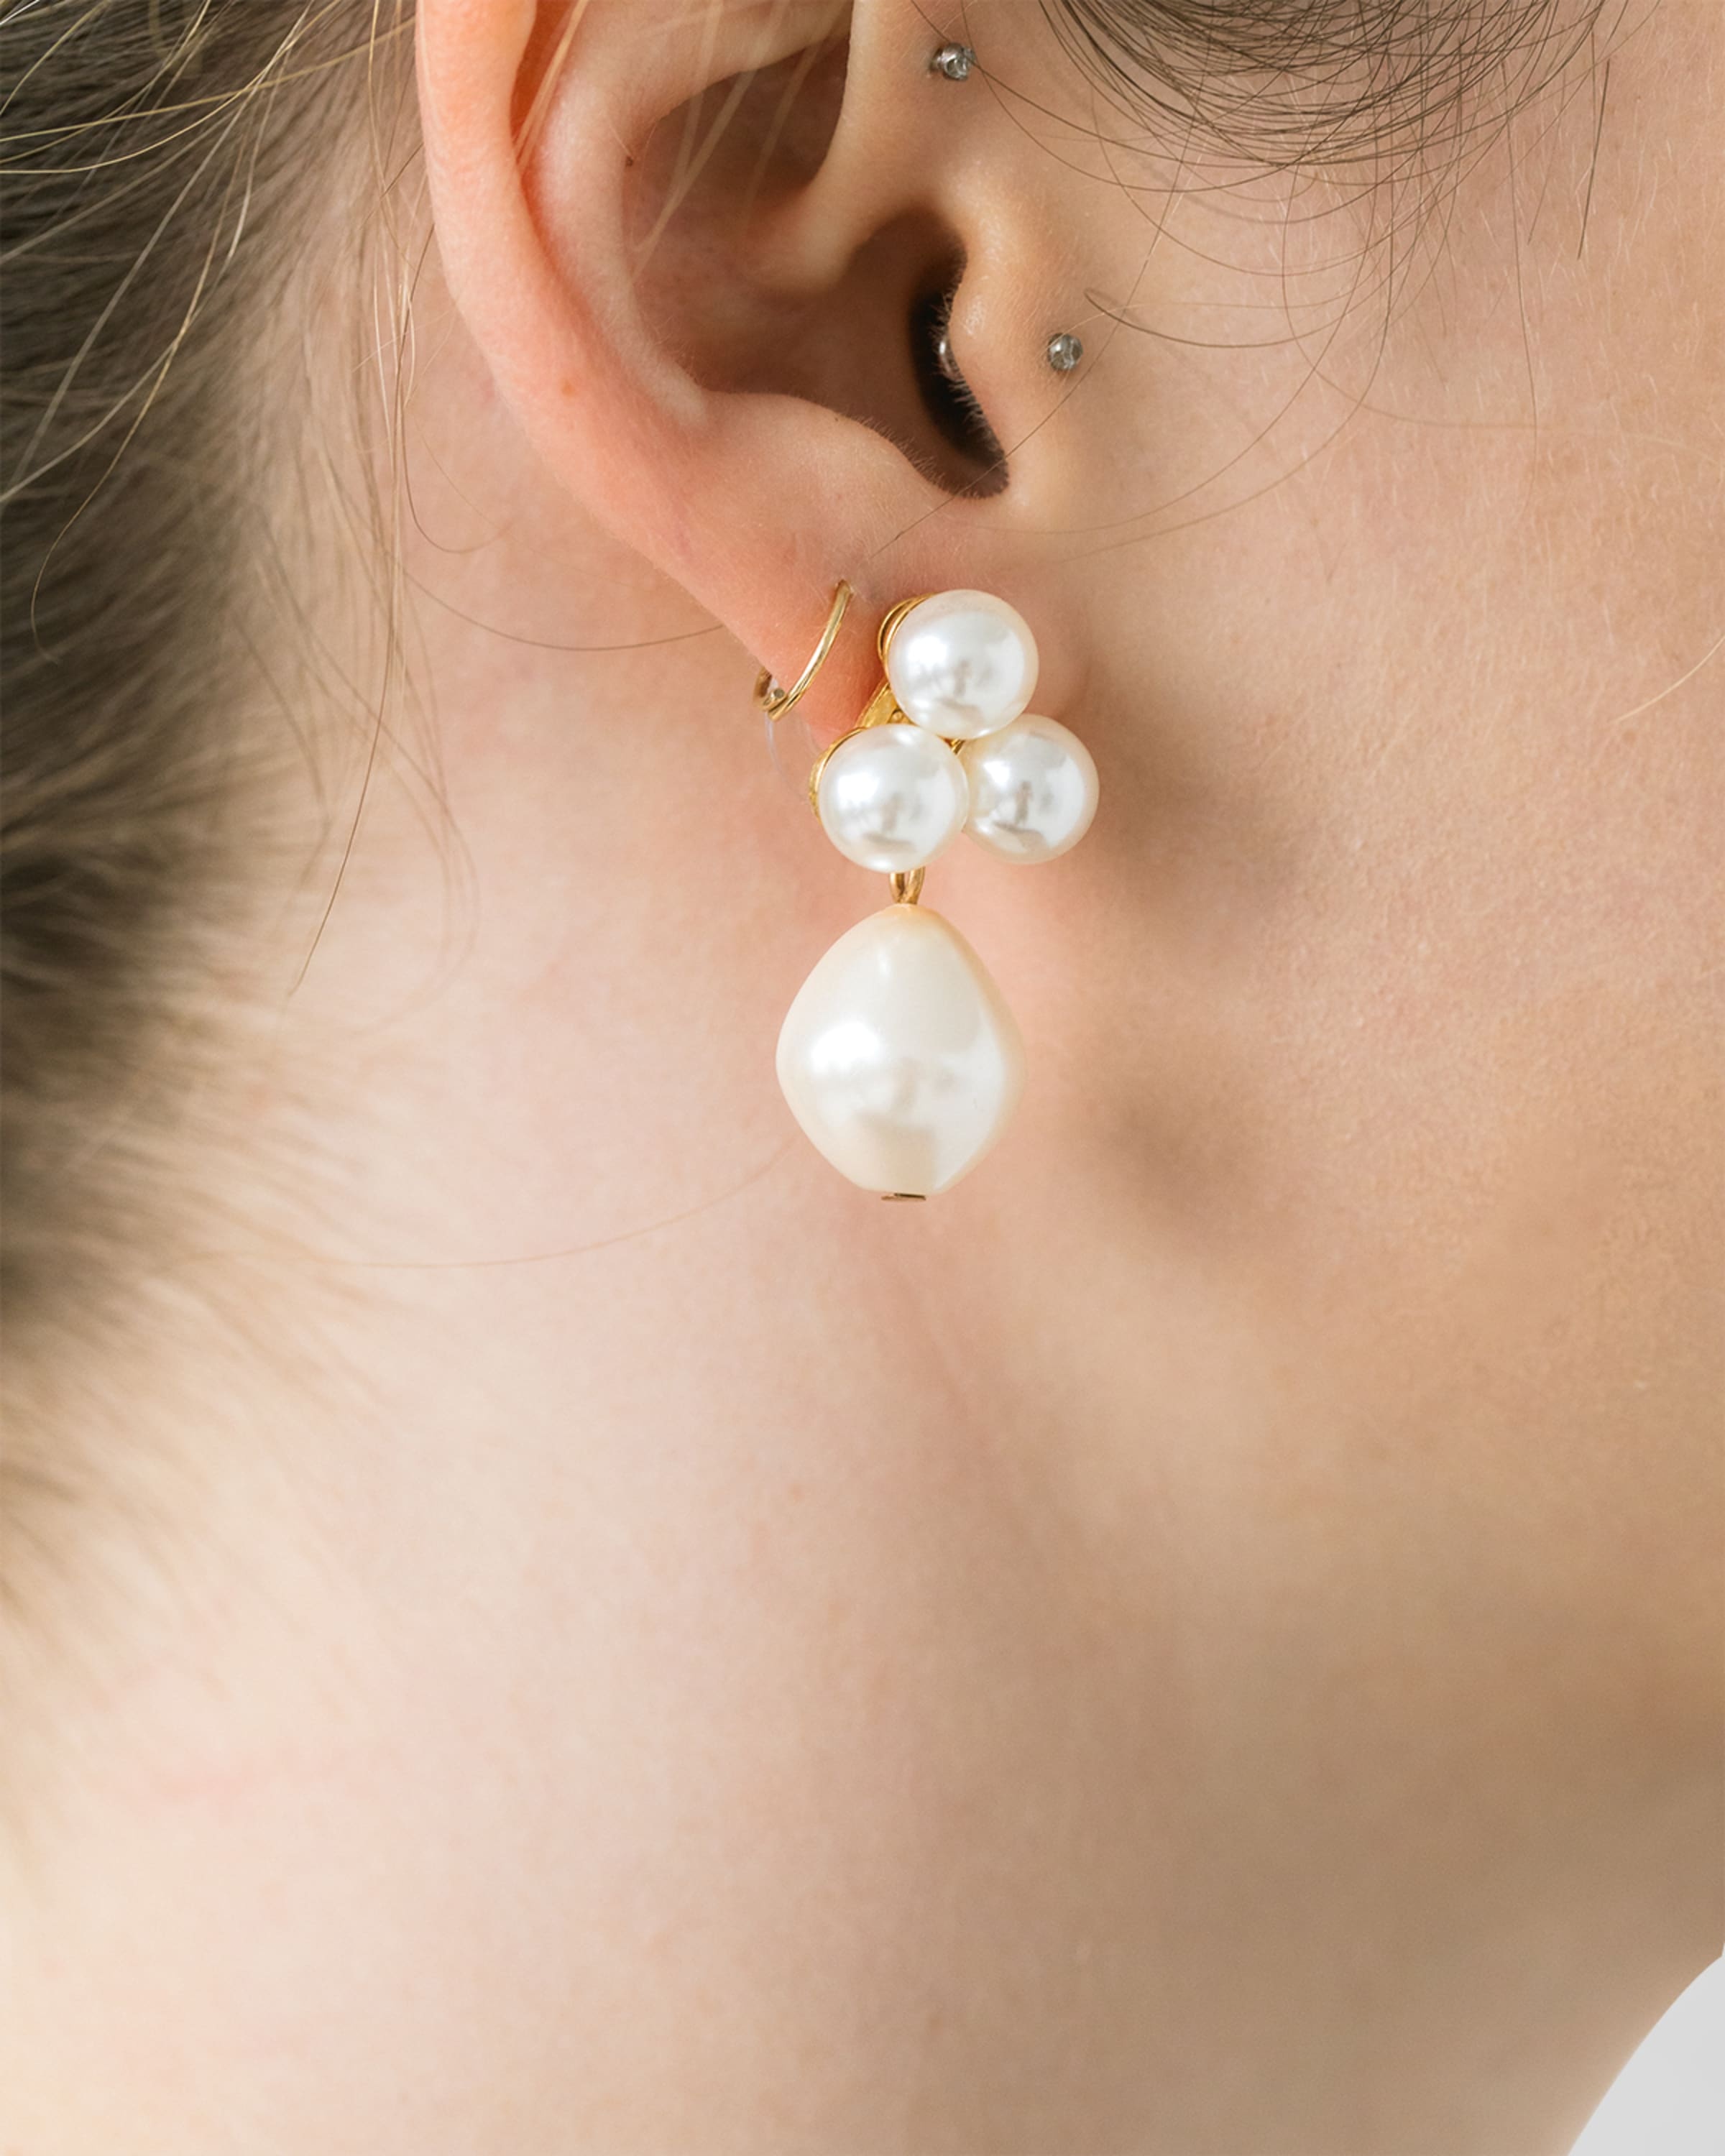 Grand Perla Earrings - 2